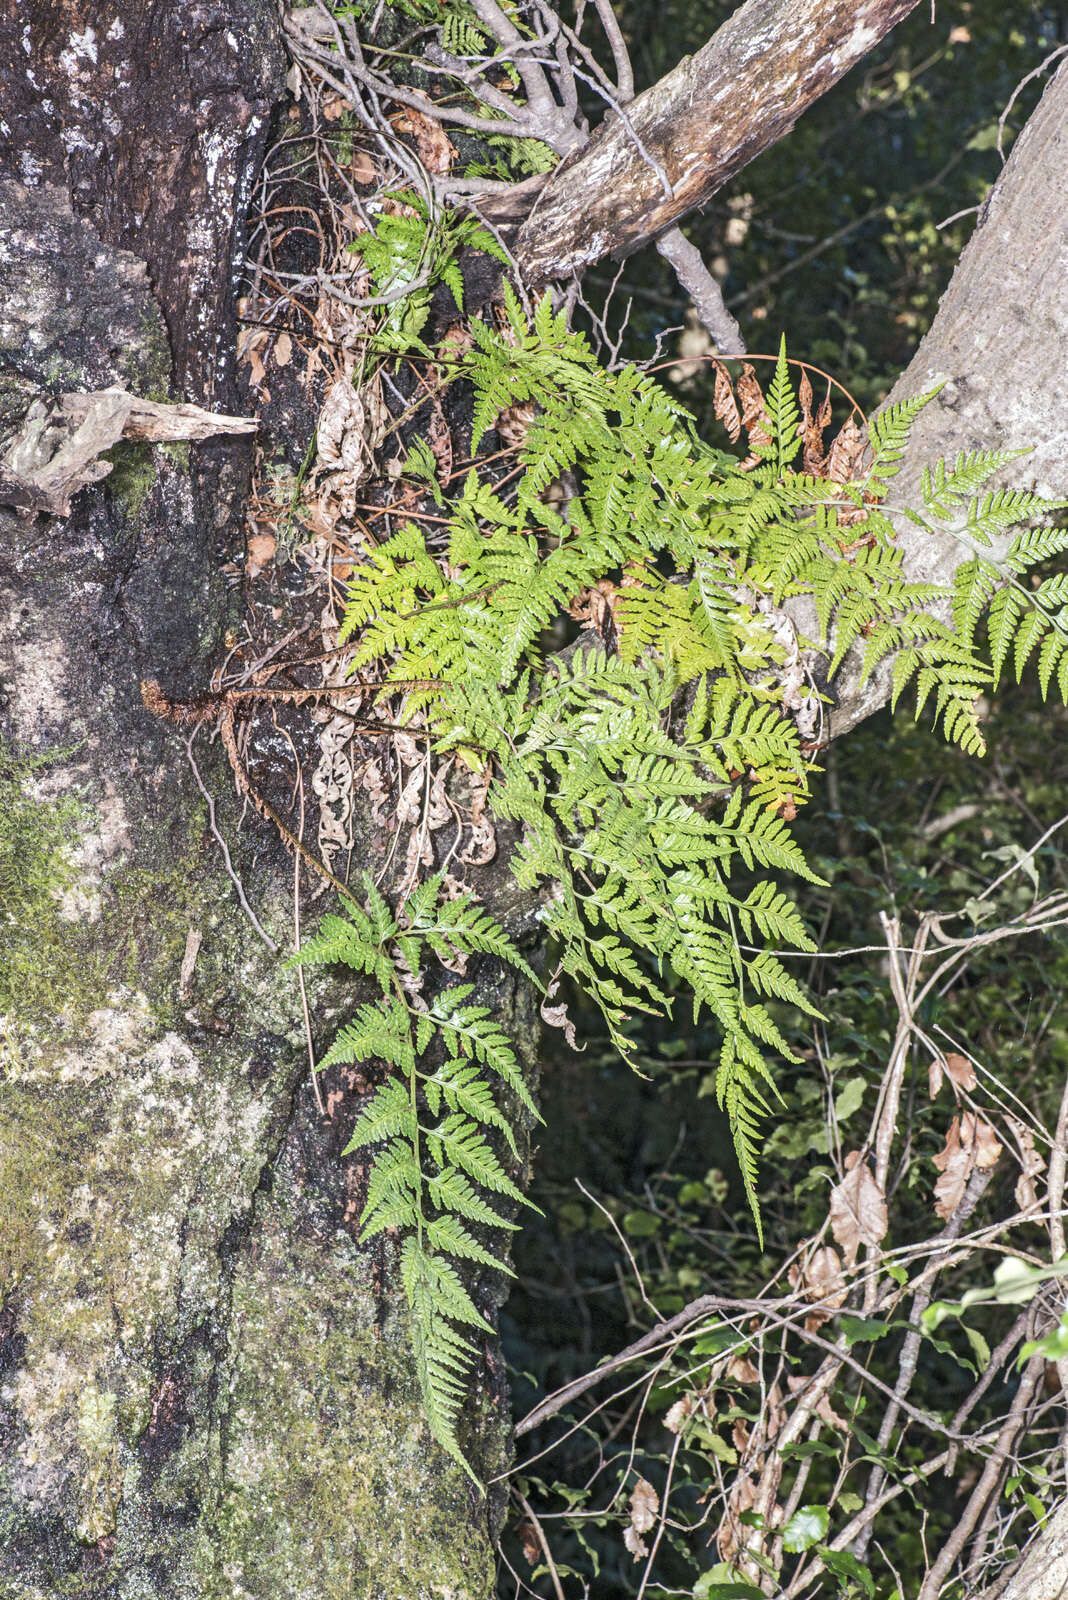 Image of iron fern